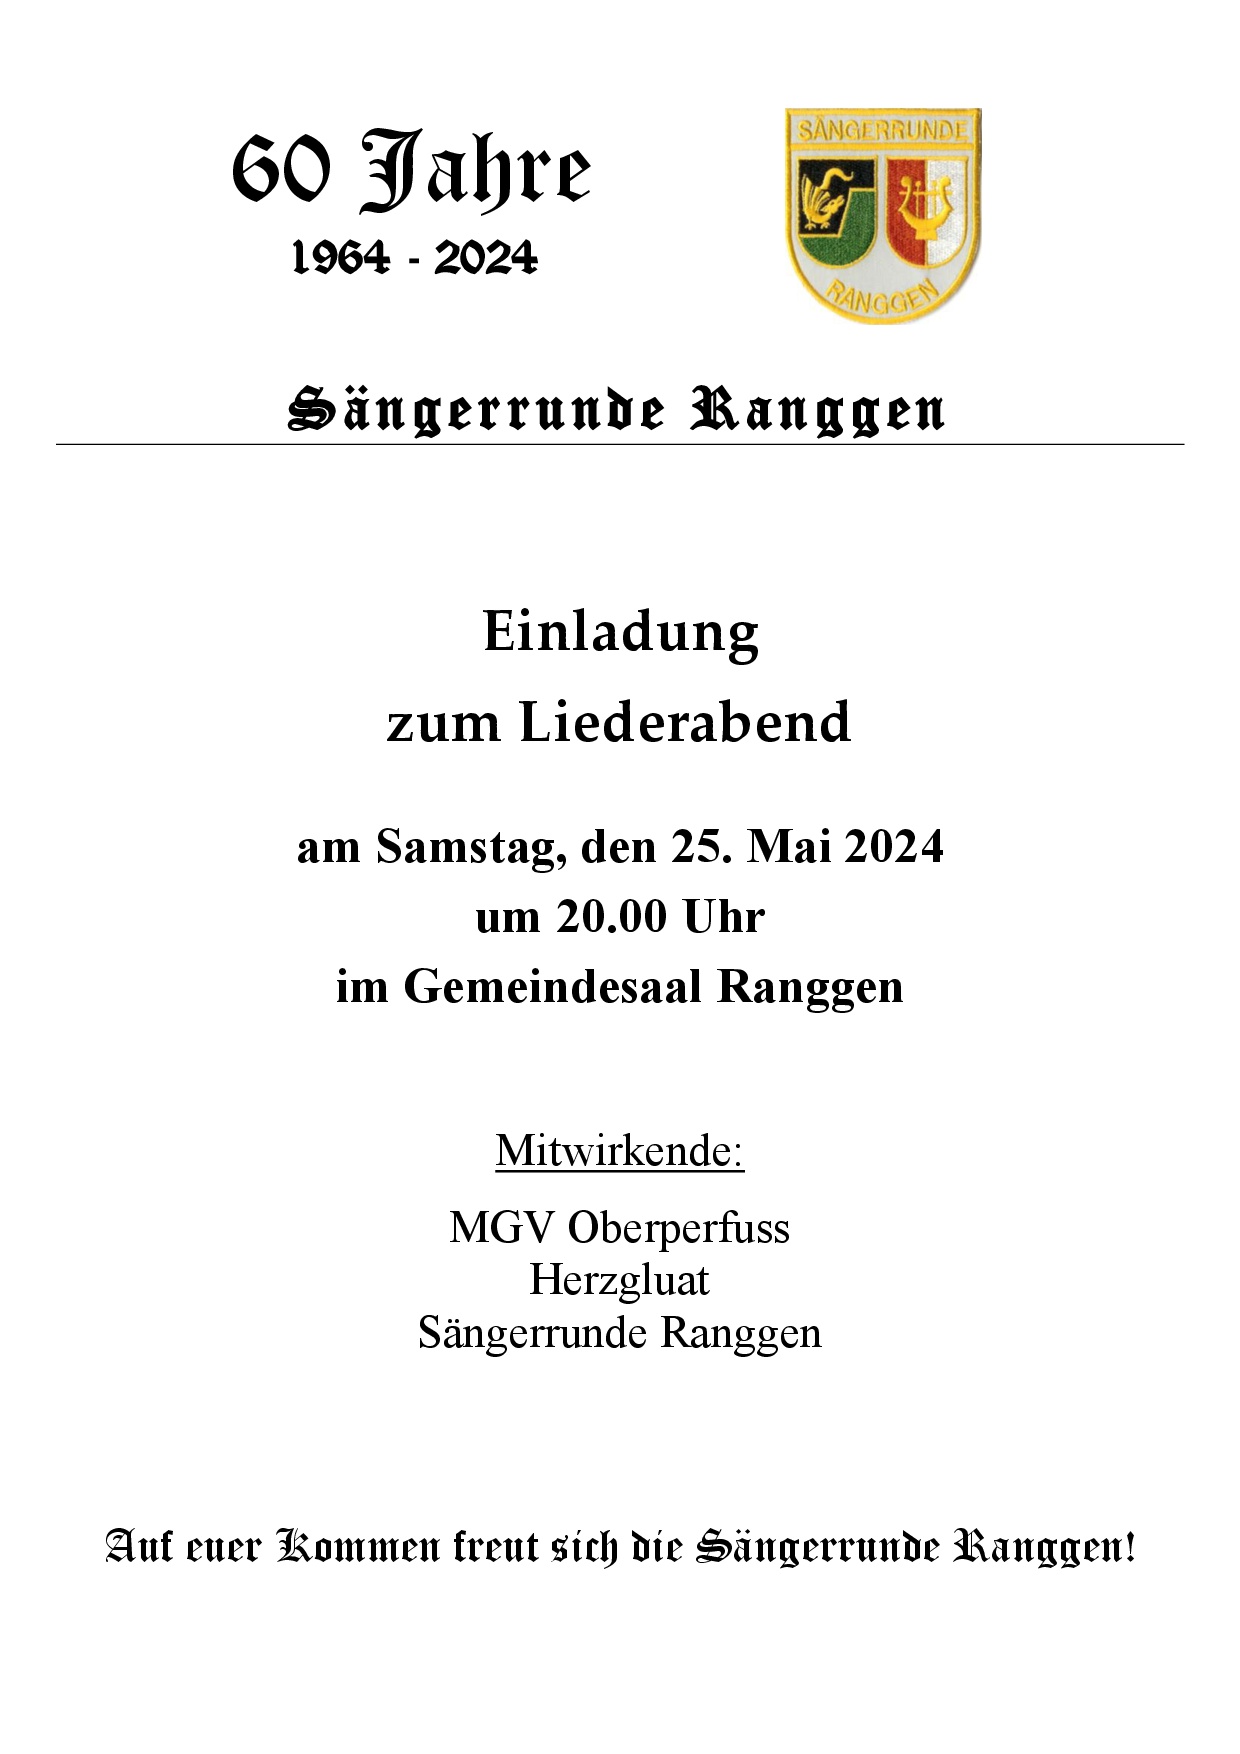 Einladung Liederabend 60 Jahre Sängerrunde Ranggen am 25. Mai 2024 um 20.00 Uhr im Mehrzwecksaal der Gemeinde Ranggen